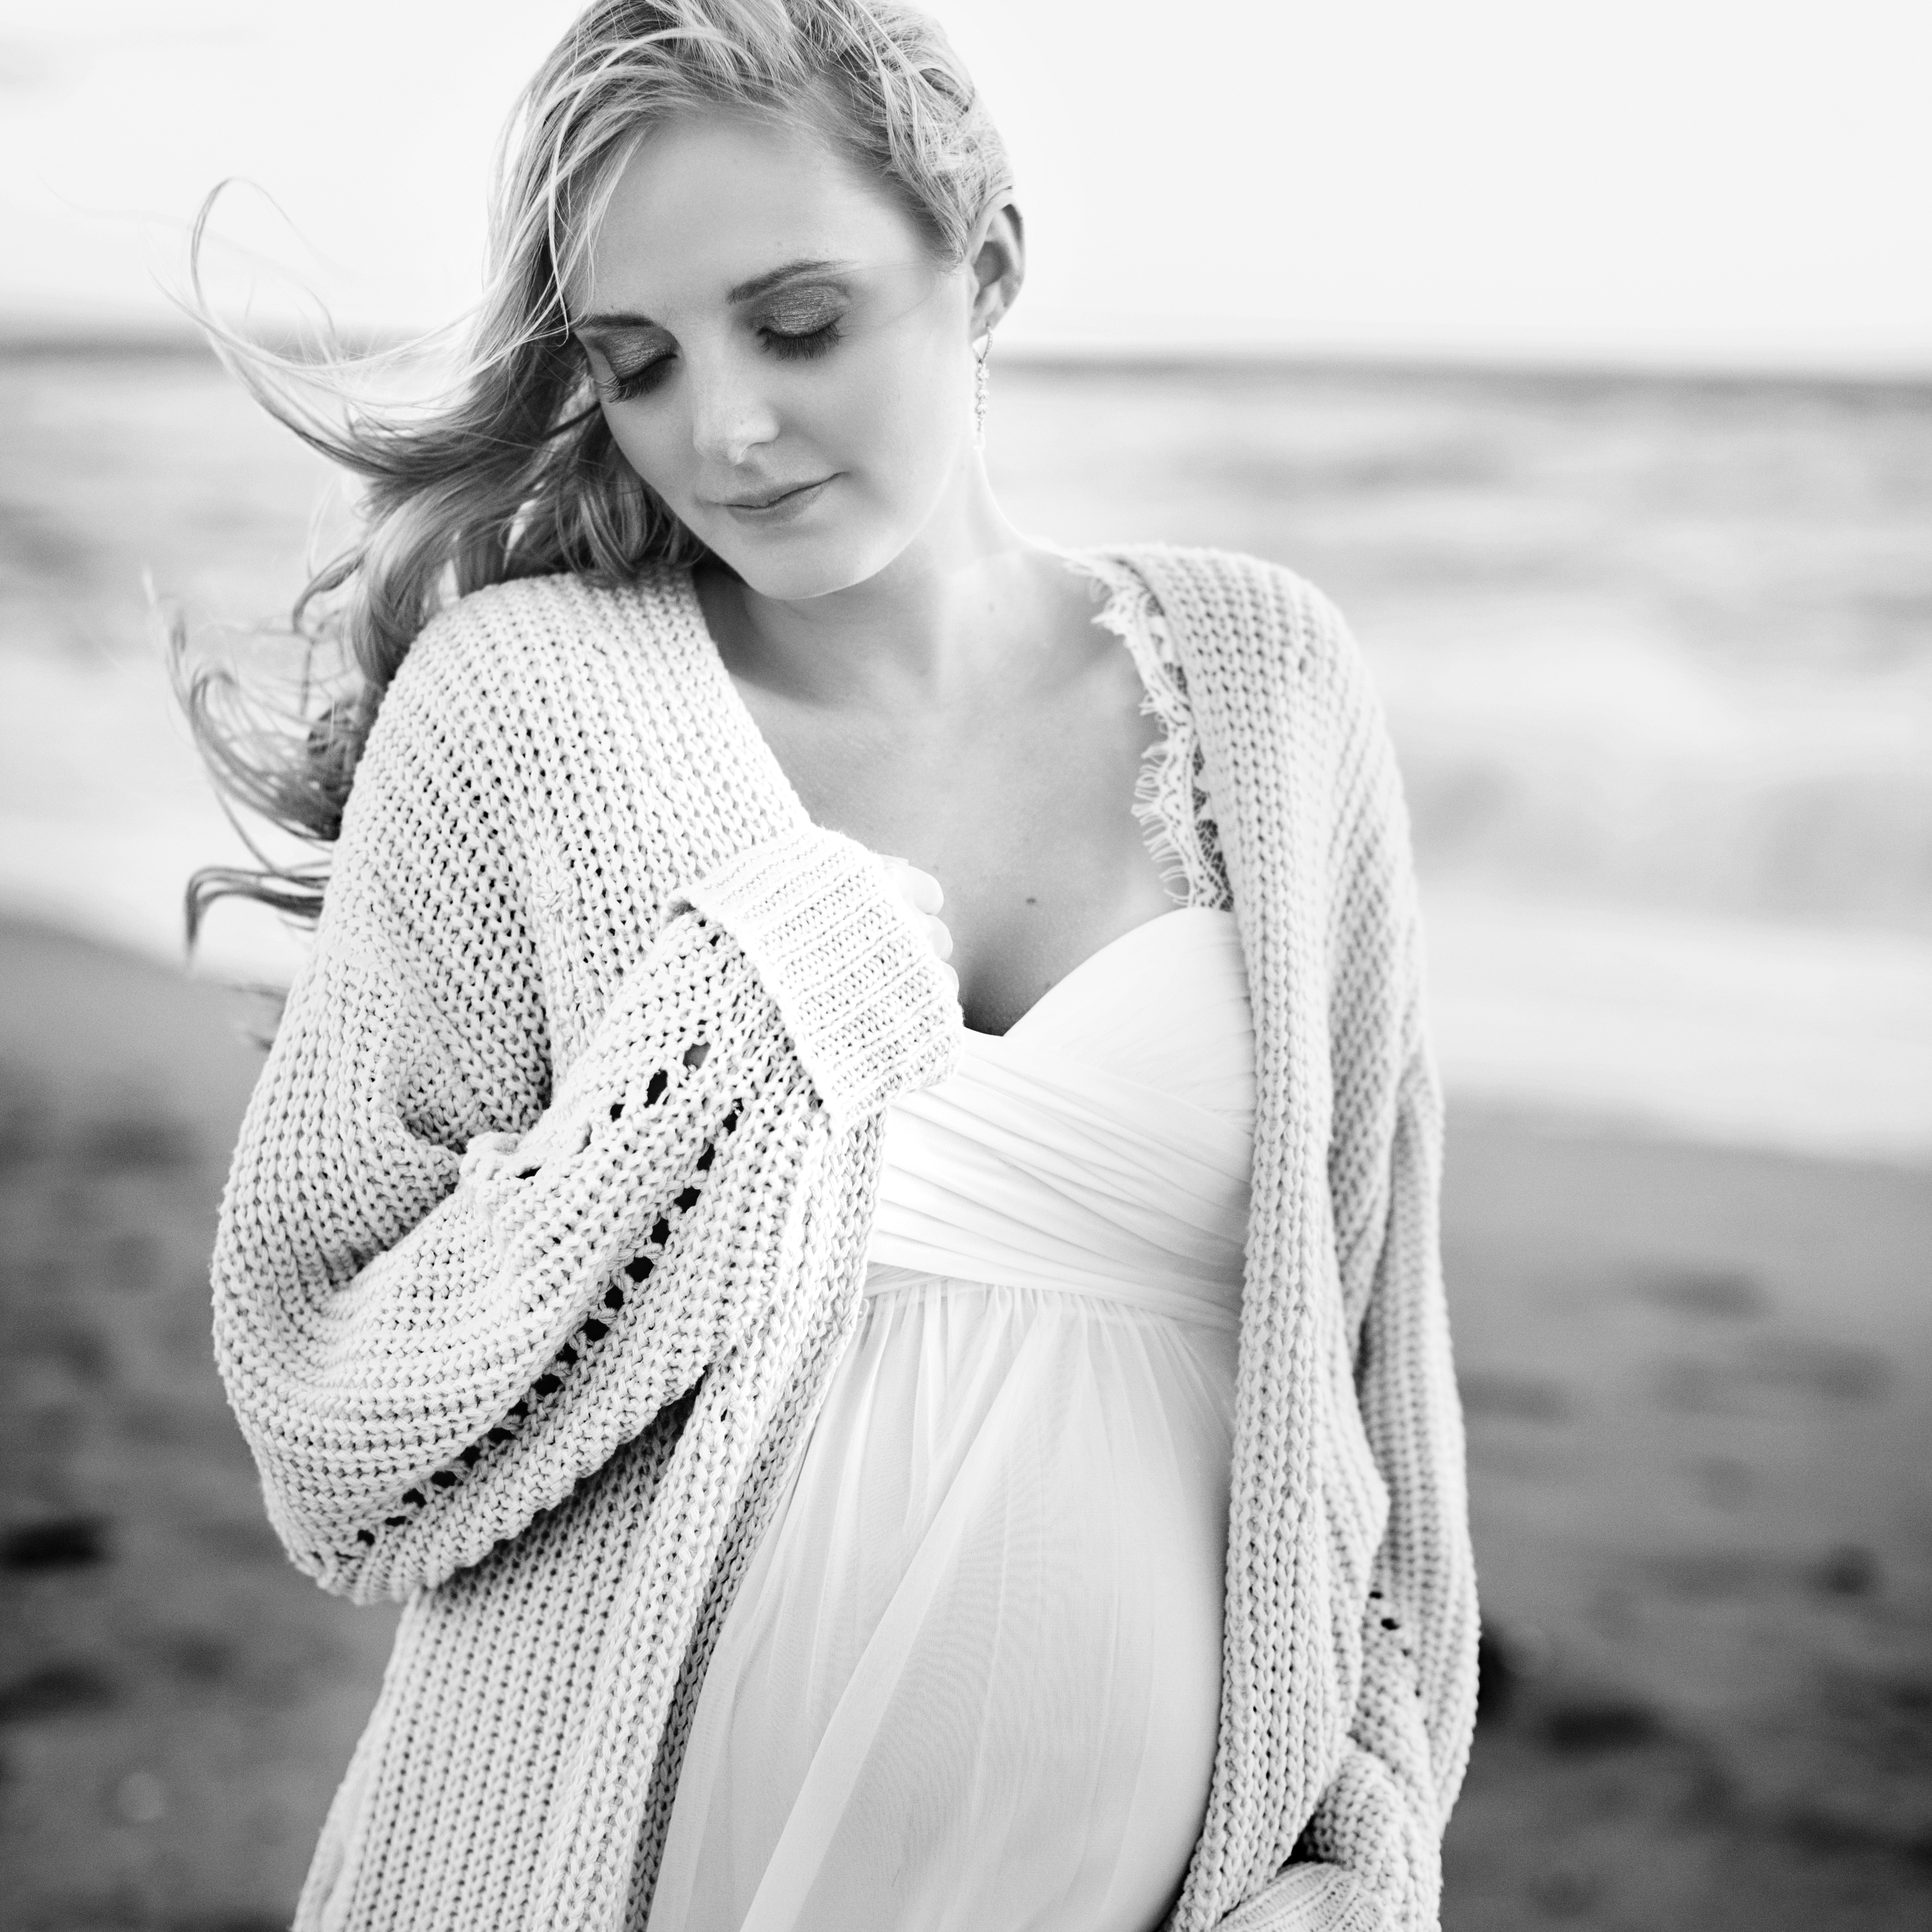 Portland Maine Maternity and Newborn Photographer Tiffany Farley, http://tiffanyfarley.com